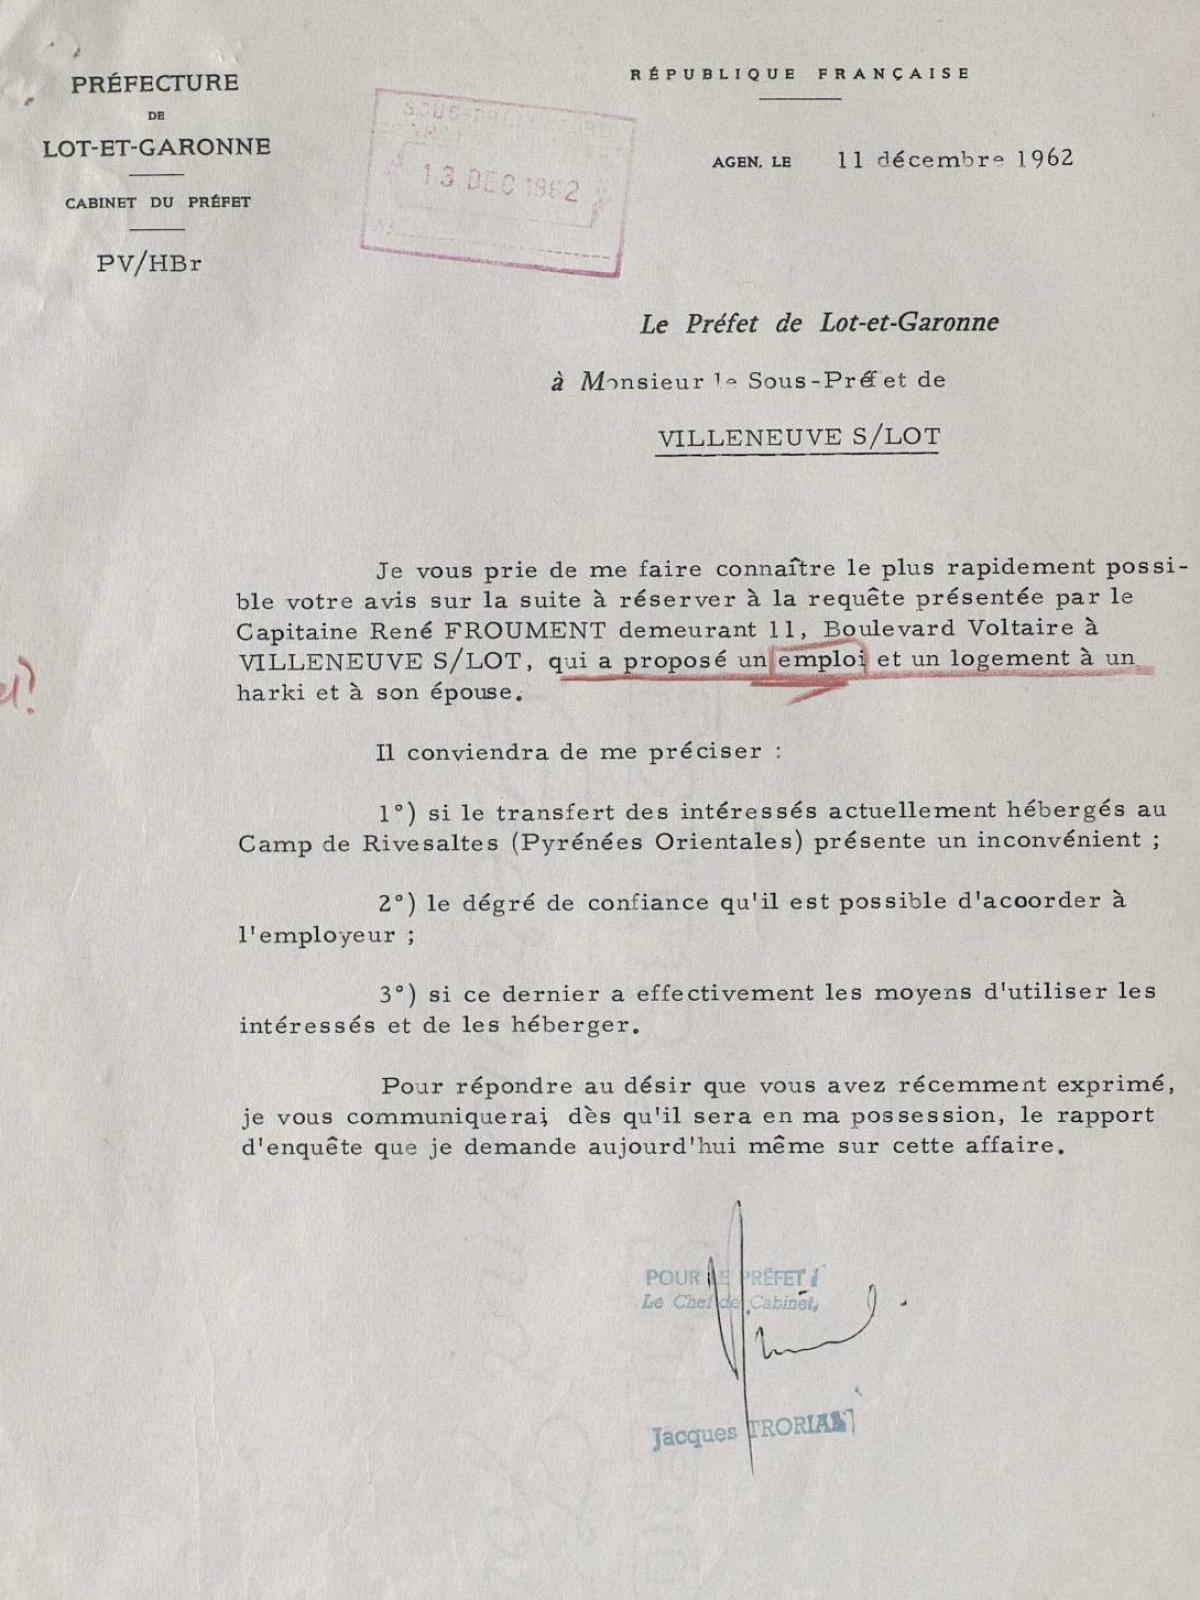 Illustration 11 : demande de renseignements du préfet du Lot-et-Garonne sur le capitaine Froument, 11 décembre 1962